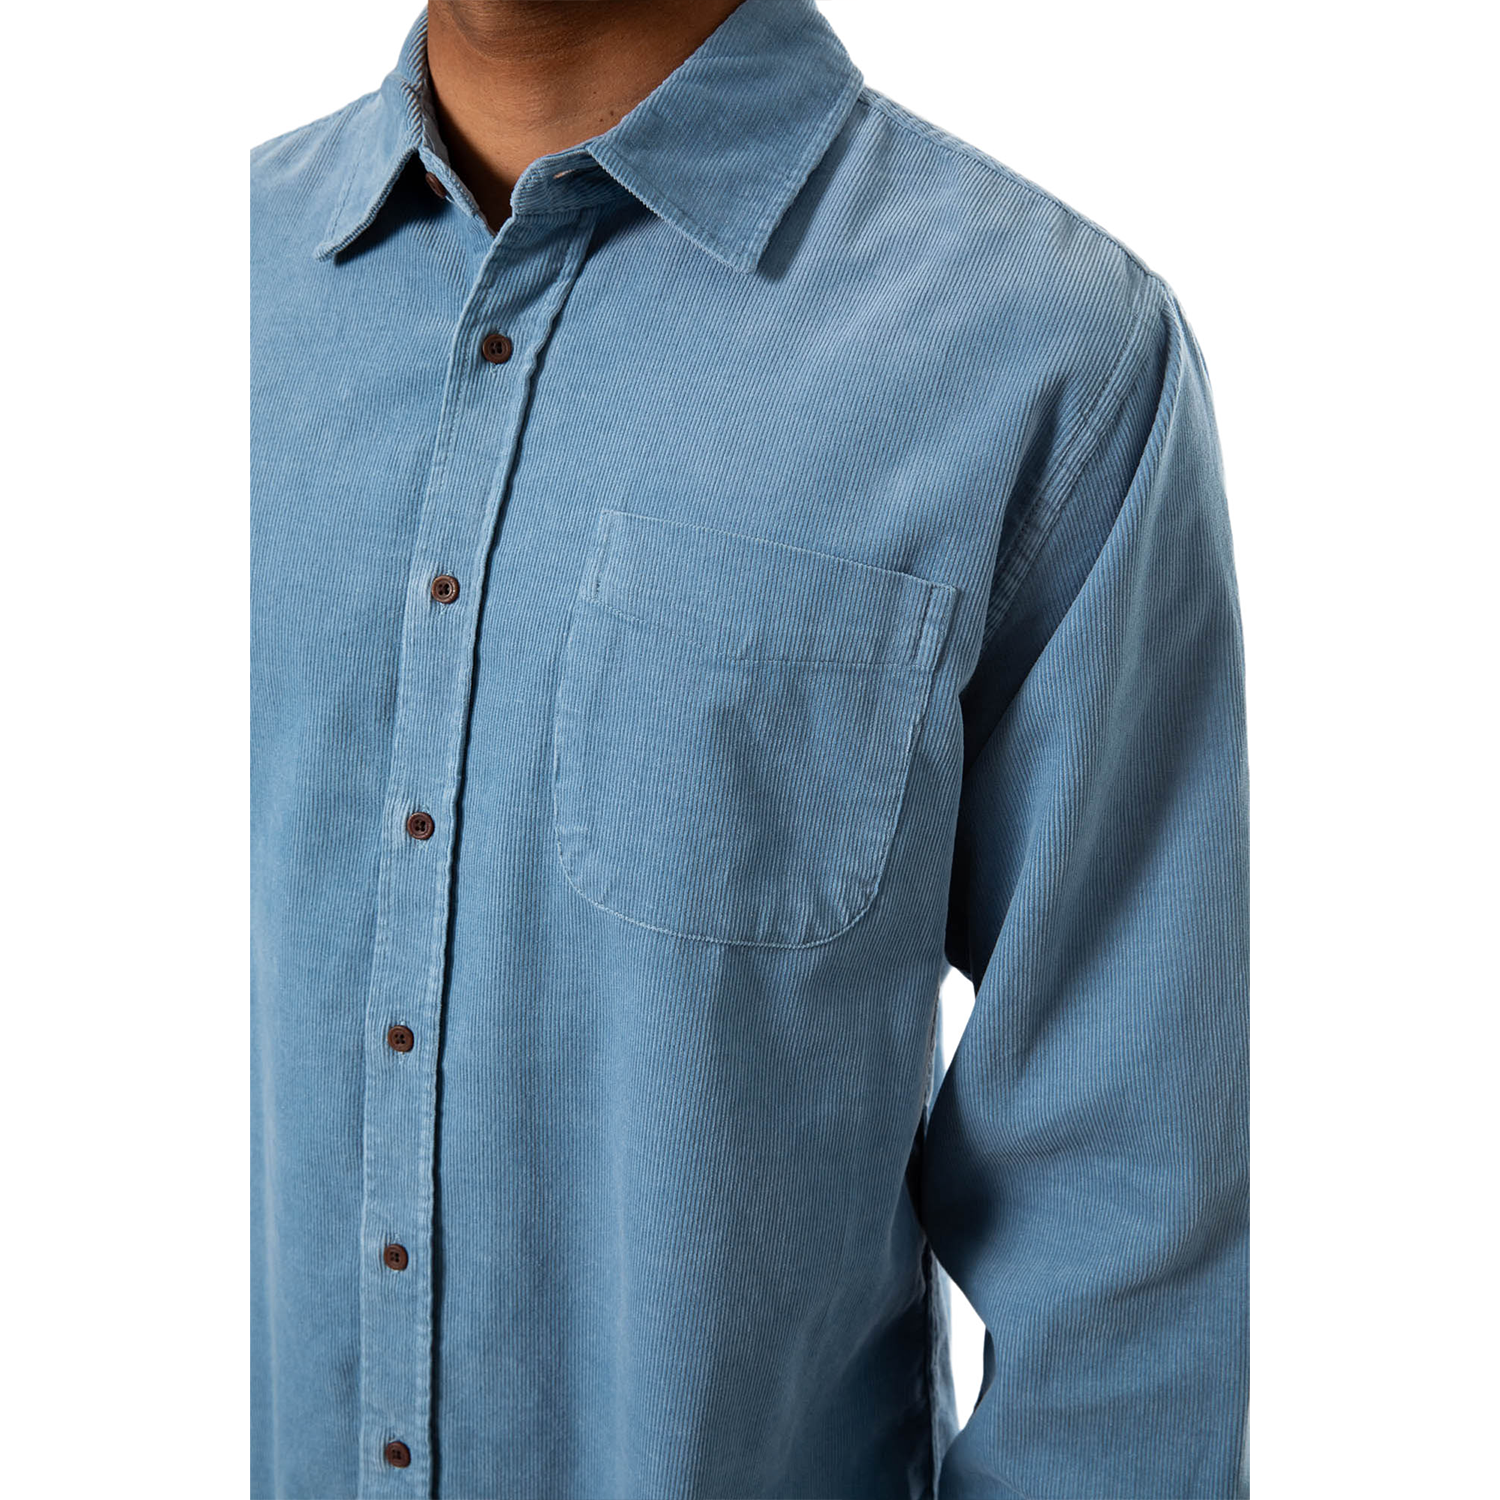 Granada Shirt "Spring Blue"